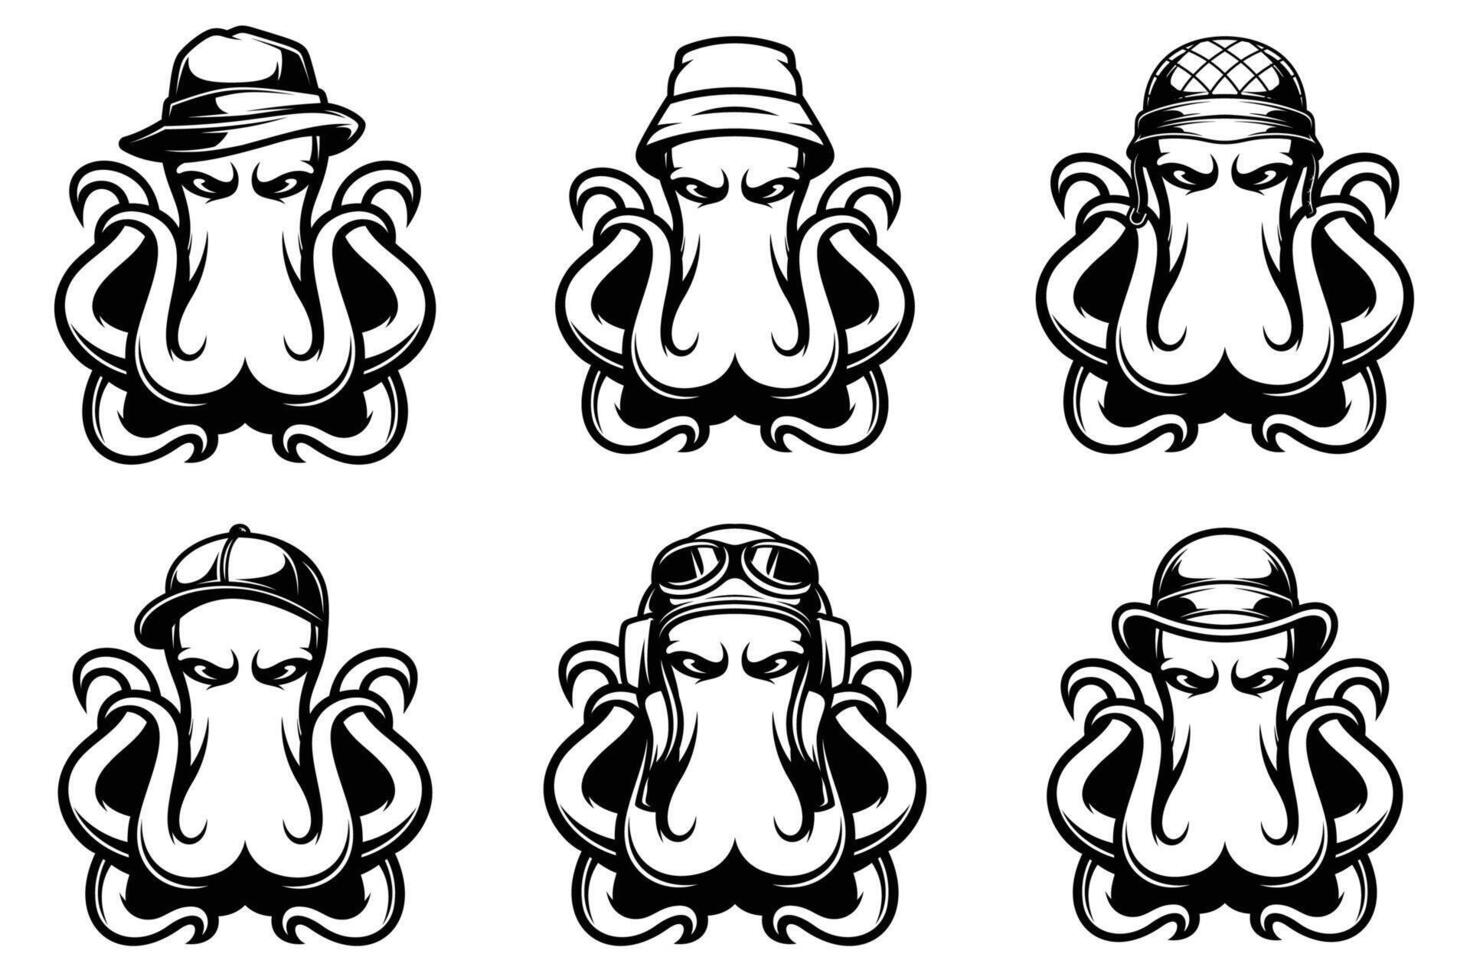 Octopus hoofd schets versie bundel vector